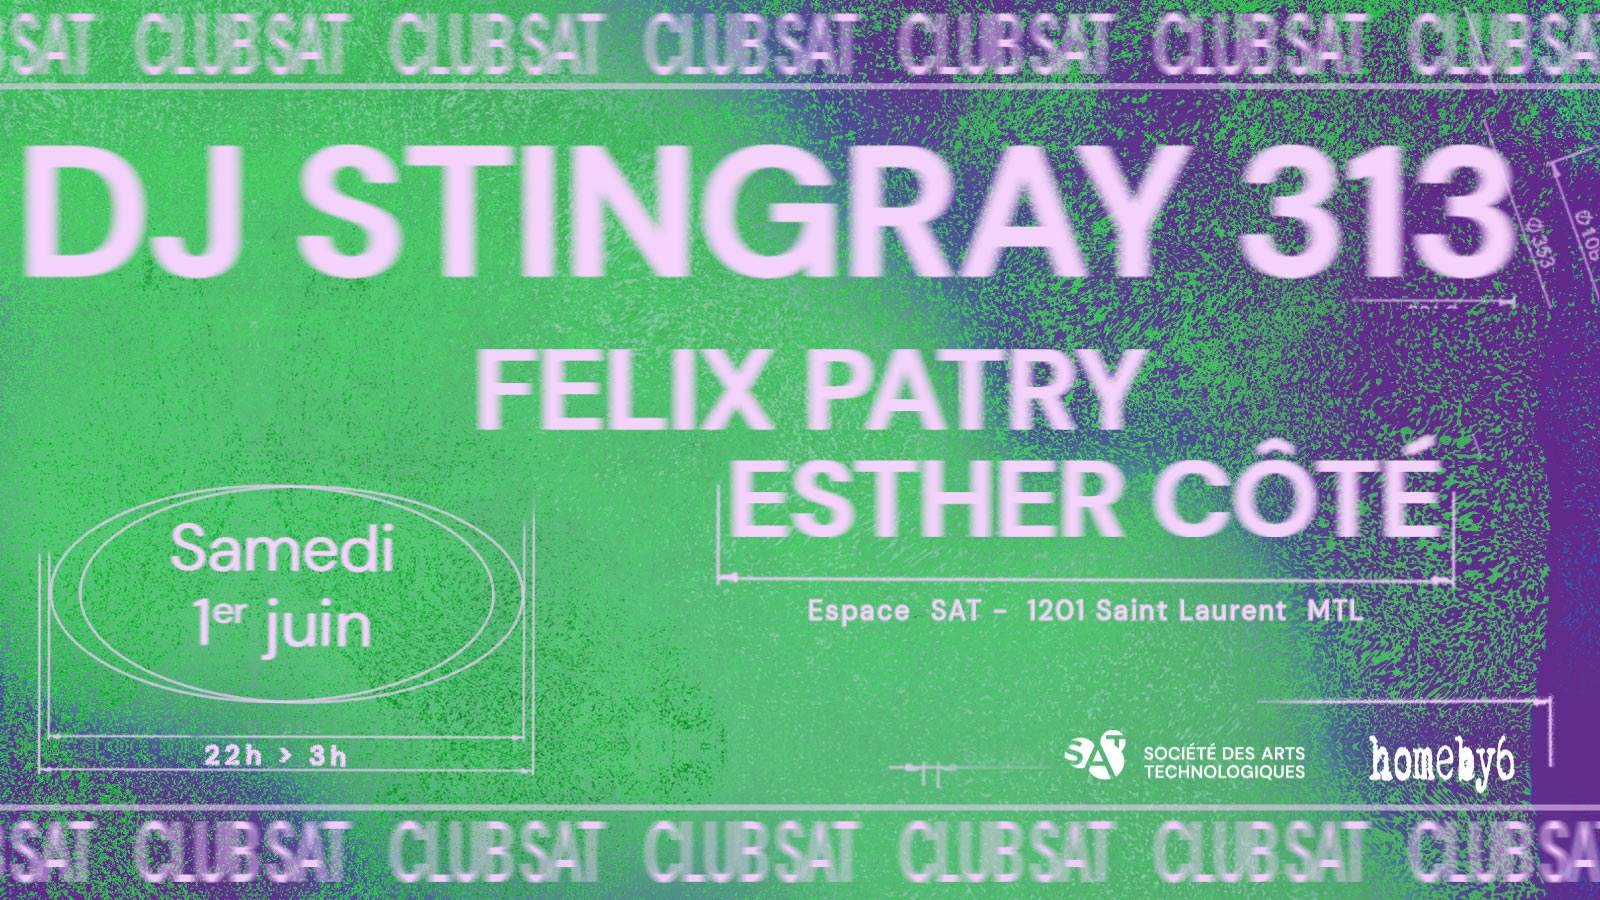 Club SAT — DJ Stingray 313 • Felix Patry • Esther Côté - Página frontal